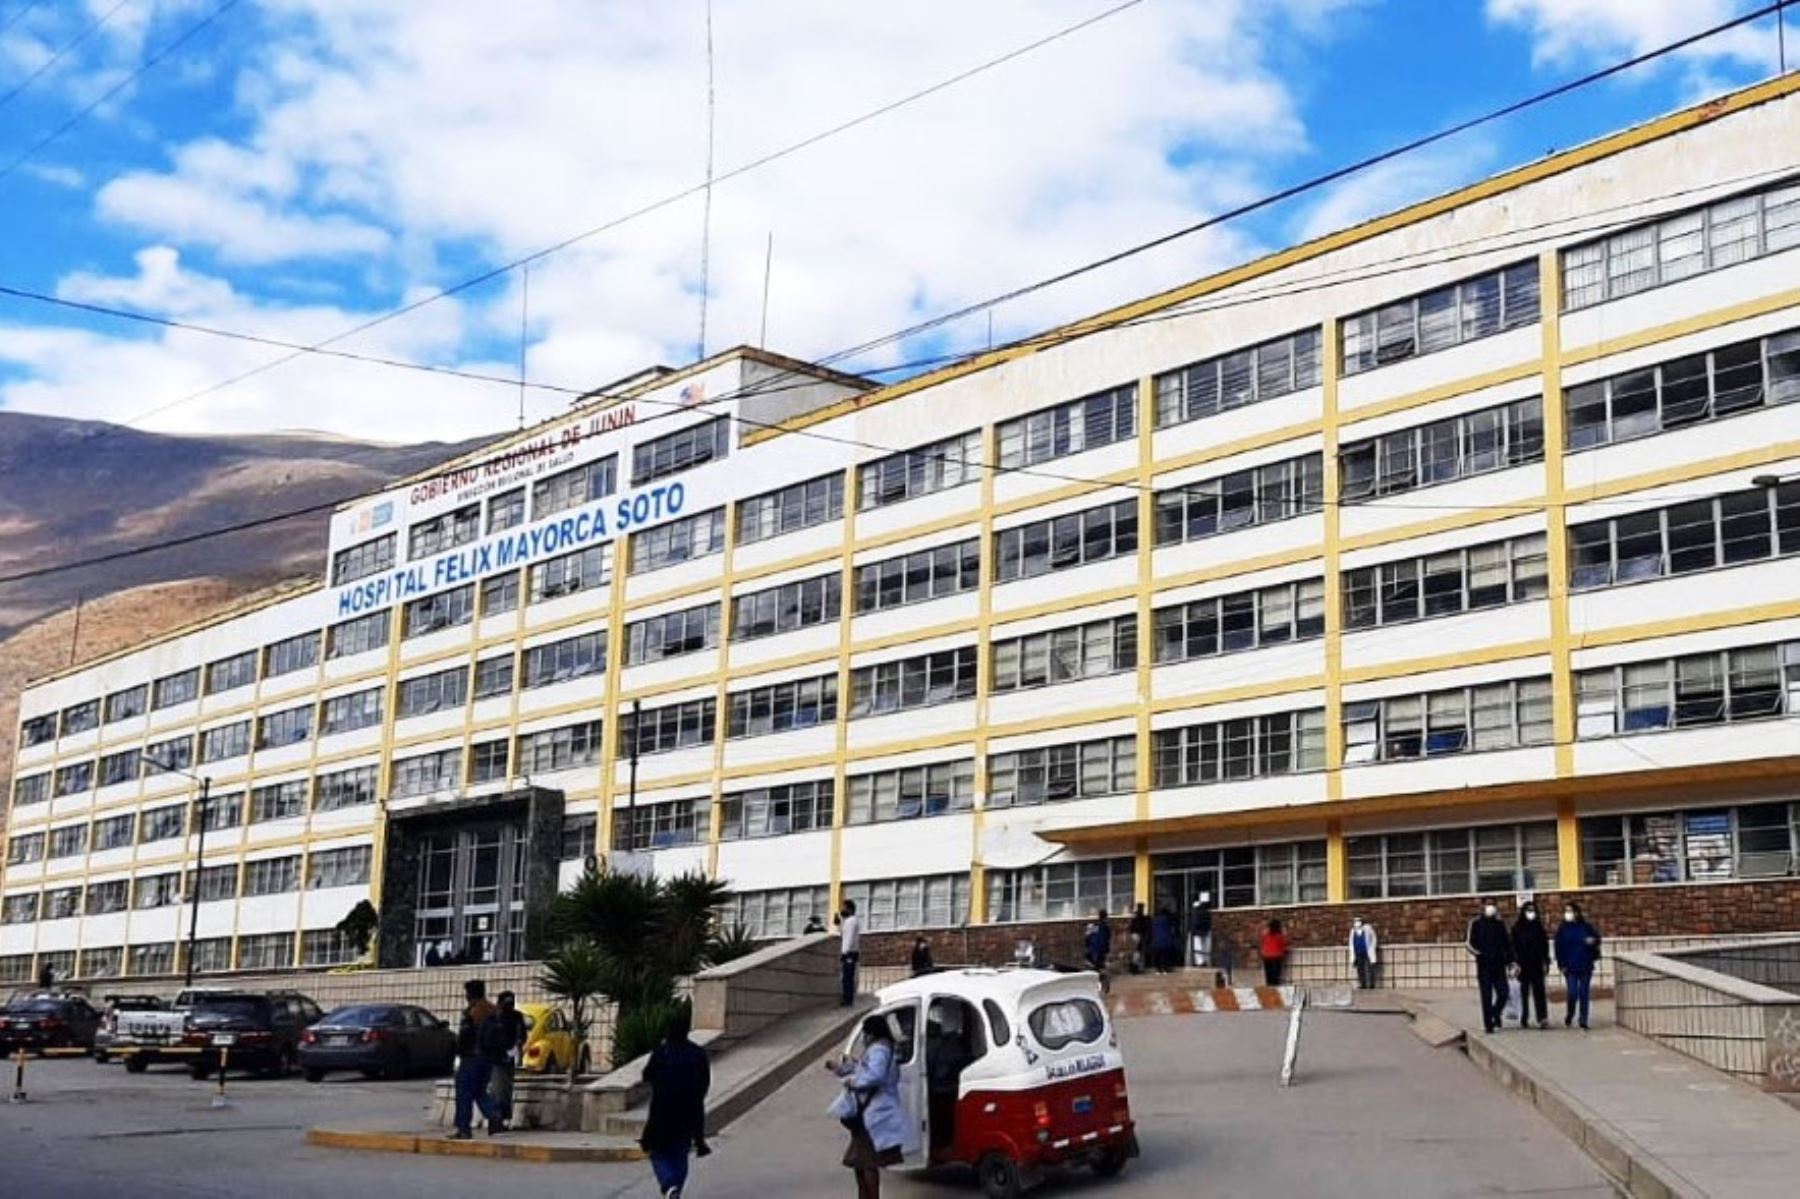 Hospital Félix Mayorca Soto en la ciudad de Tarma, región Junín. ANDINA/Difusión